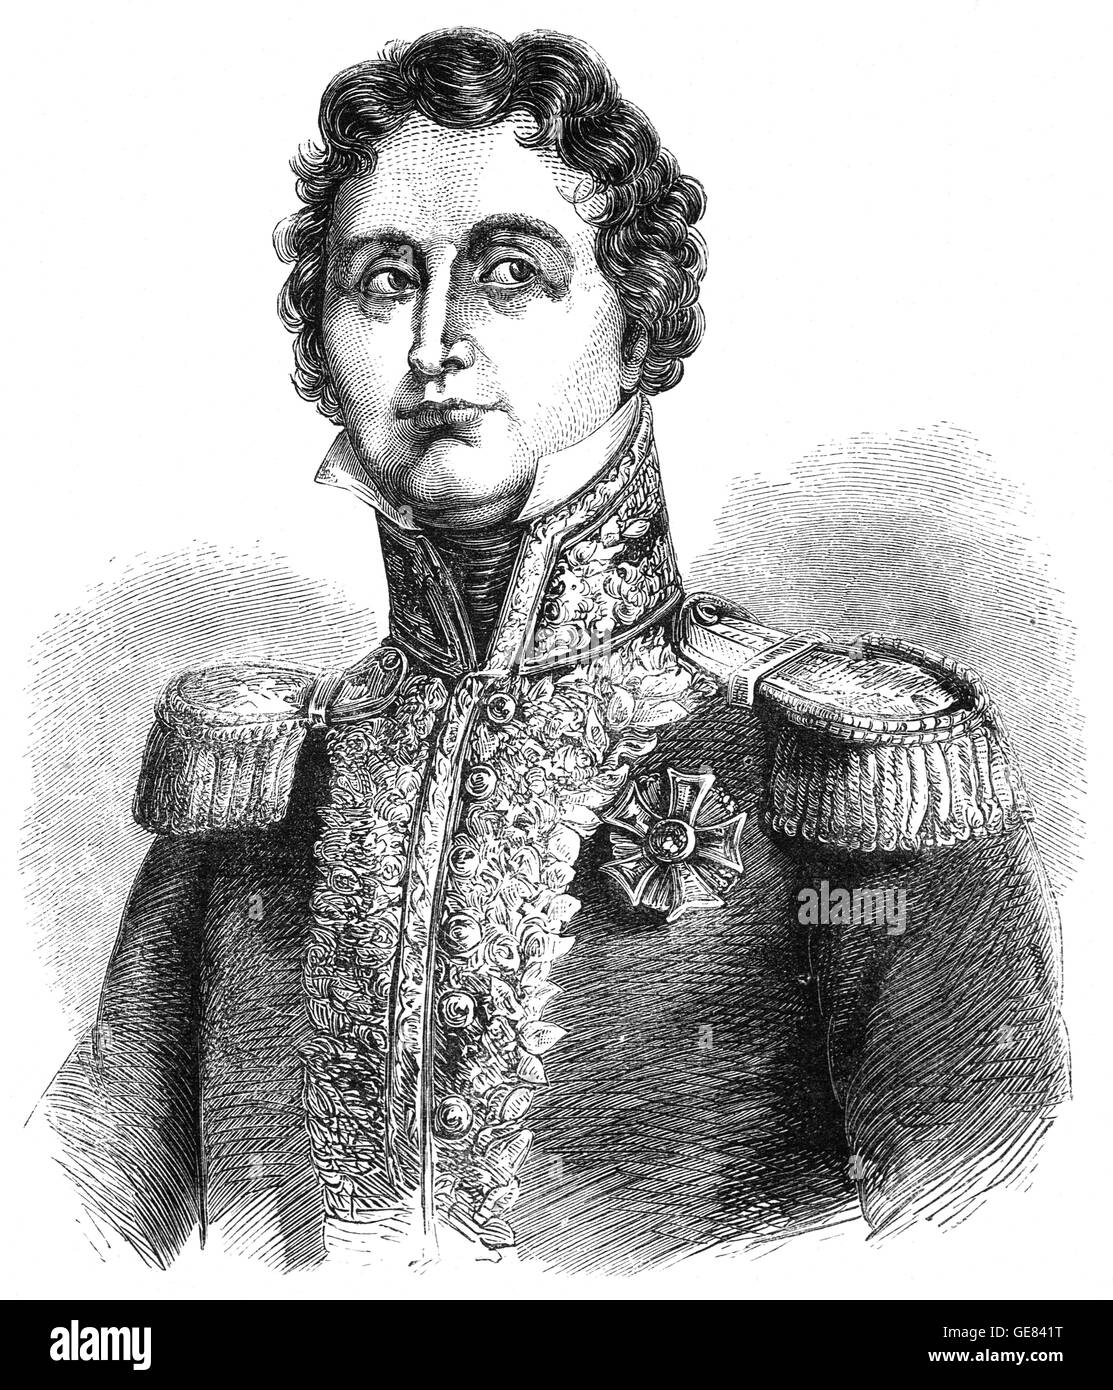 Général maréchal Jean-de-Dieu Soult (1769 - 1851), était un général et homme d'État français, nommé maréchal de l'Empire en 1804 et souvent appelé le Maréchal Soult. Il a aussi été trois fois en tant que président du Conseil des ministres, ou premier ministre de la France. Banque D'Images